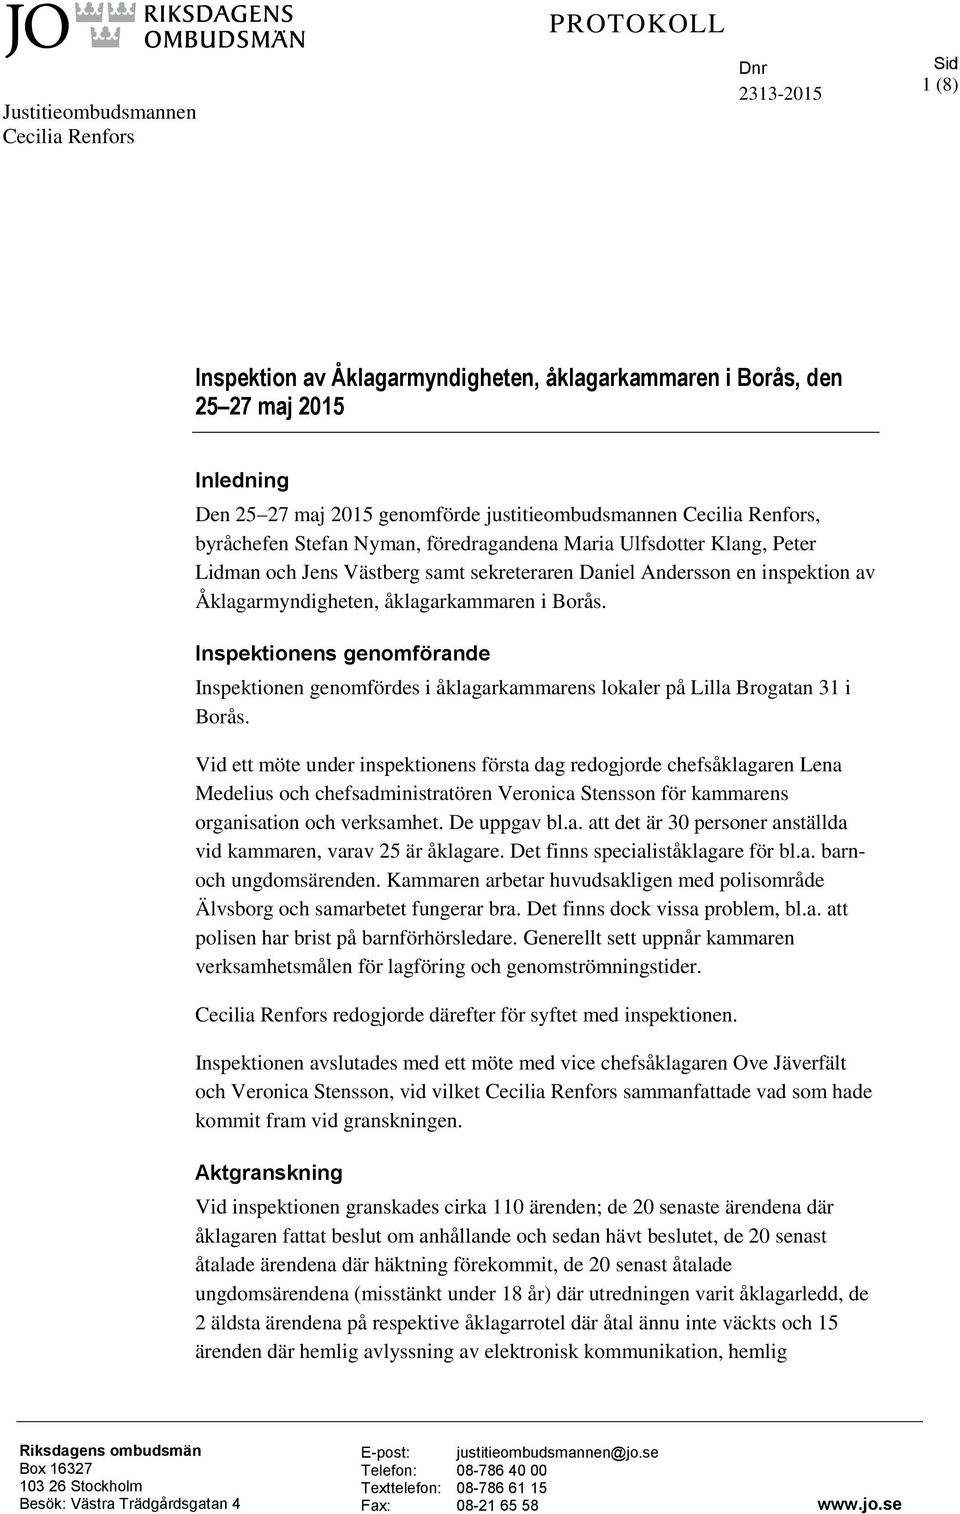 Åklagarmyndigheten, åklagarkammaren i Borås. Inspektionens genomförande Inspektionen genomfördes i åklagarkammarens lokaler på Lilla Brogatan 31 i Borås.